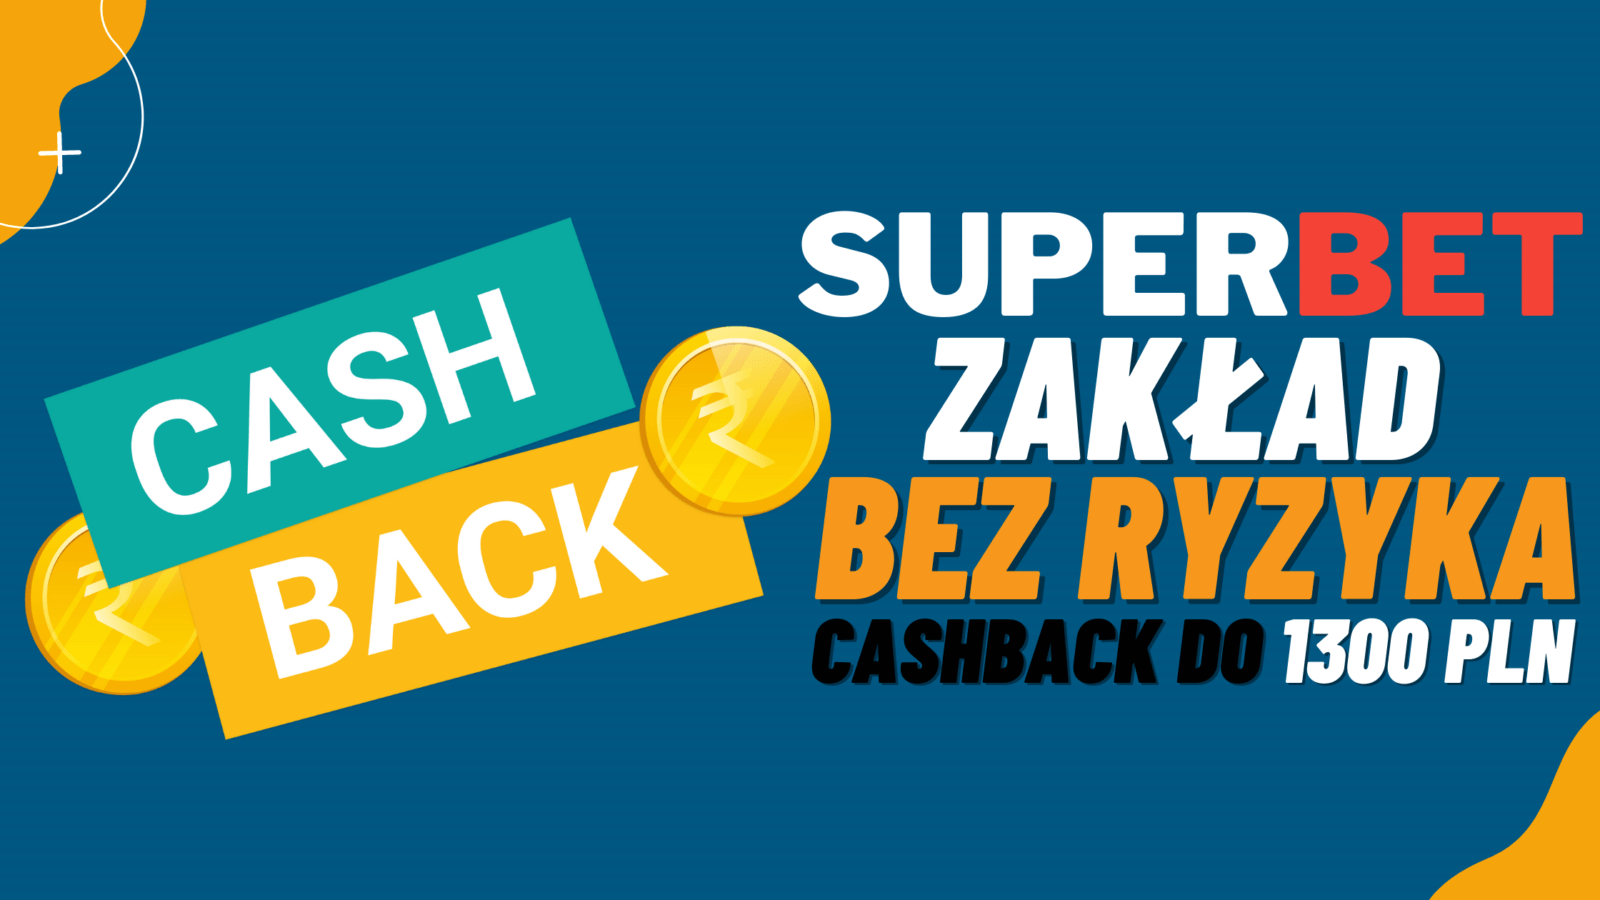 Legalny bukmacher Superbet zaklad bez ryzyka cashback do 1200 PLN